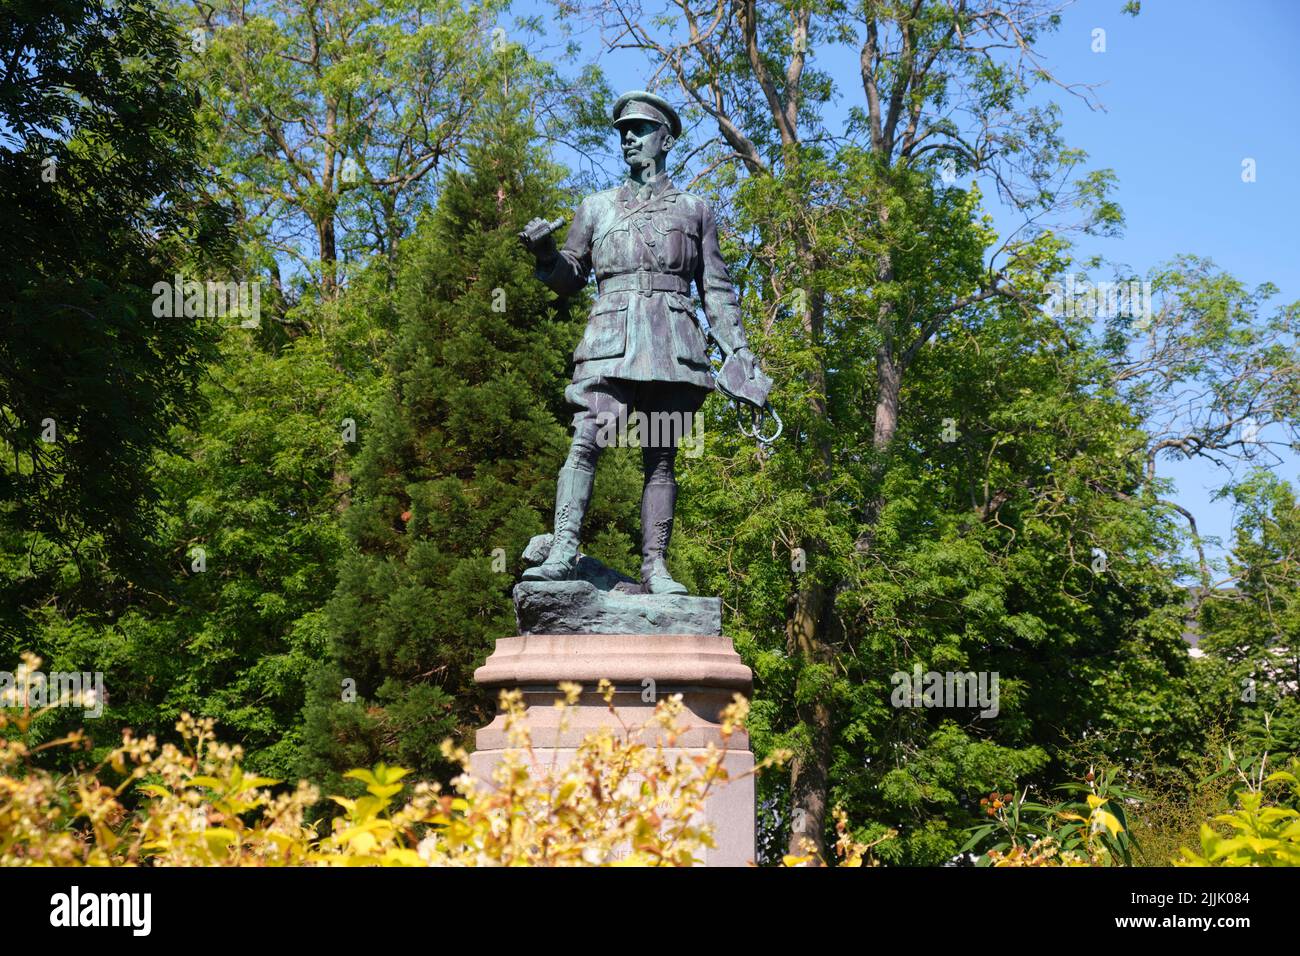 Eine stehende Bronzestatue des Oberstleutnants Lord Ninian Edward Crichton Stuart, die im Ersten Weltkrieg getötet wurde. In Cardiff, Wales, Vereinigtes Königreich. Stockfoto